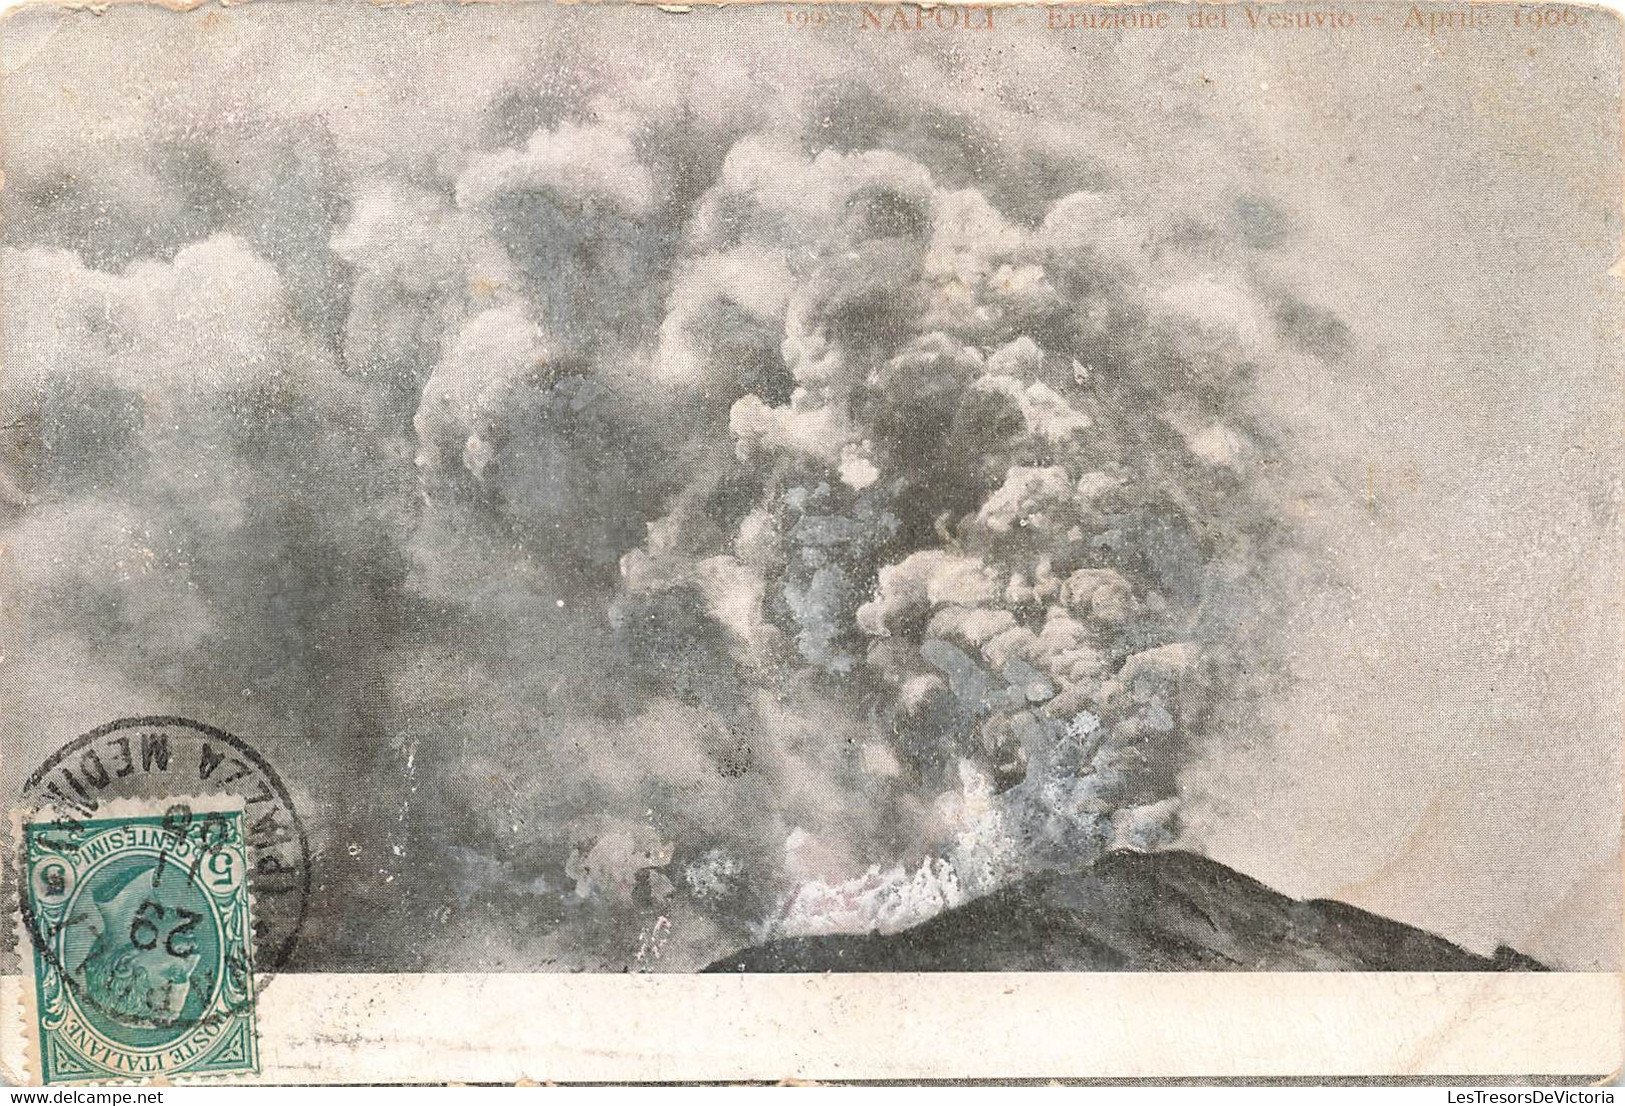 CPA Catastophe Naturelle - éruption Volcanique - Vésuve - Collezione Capretti - - Disasters